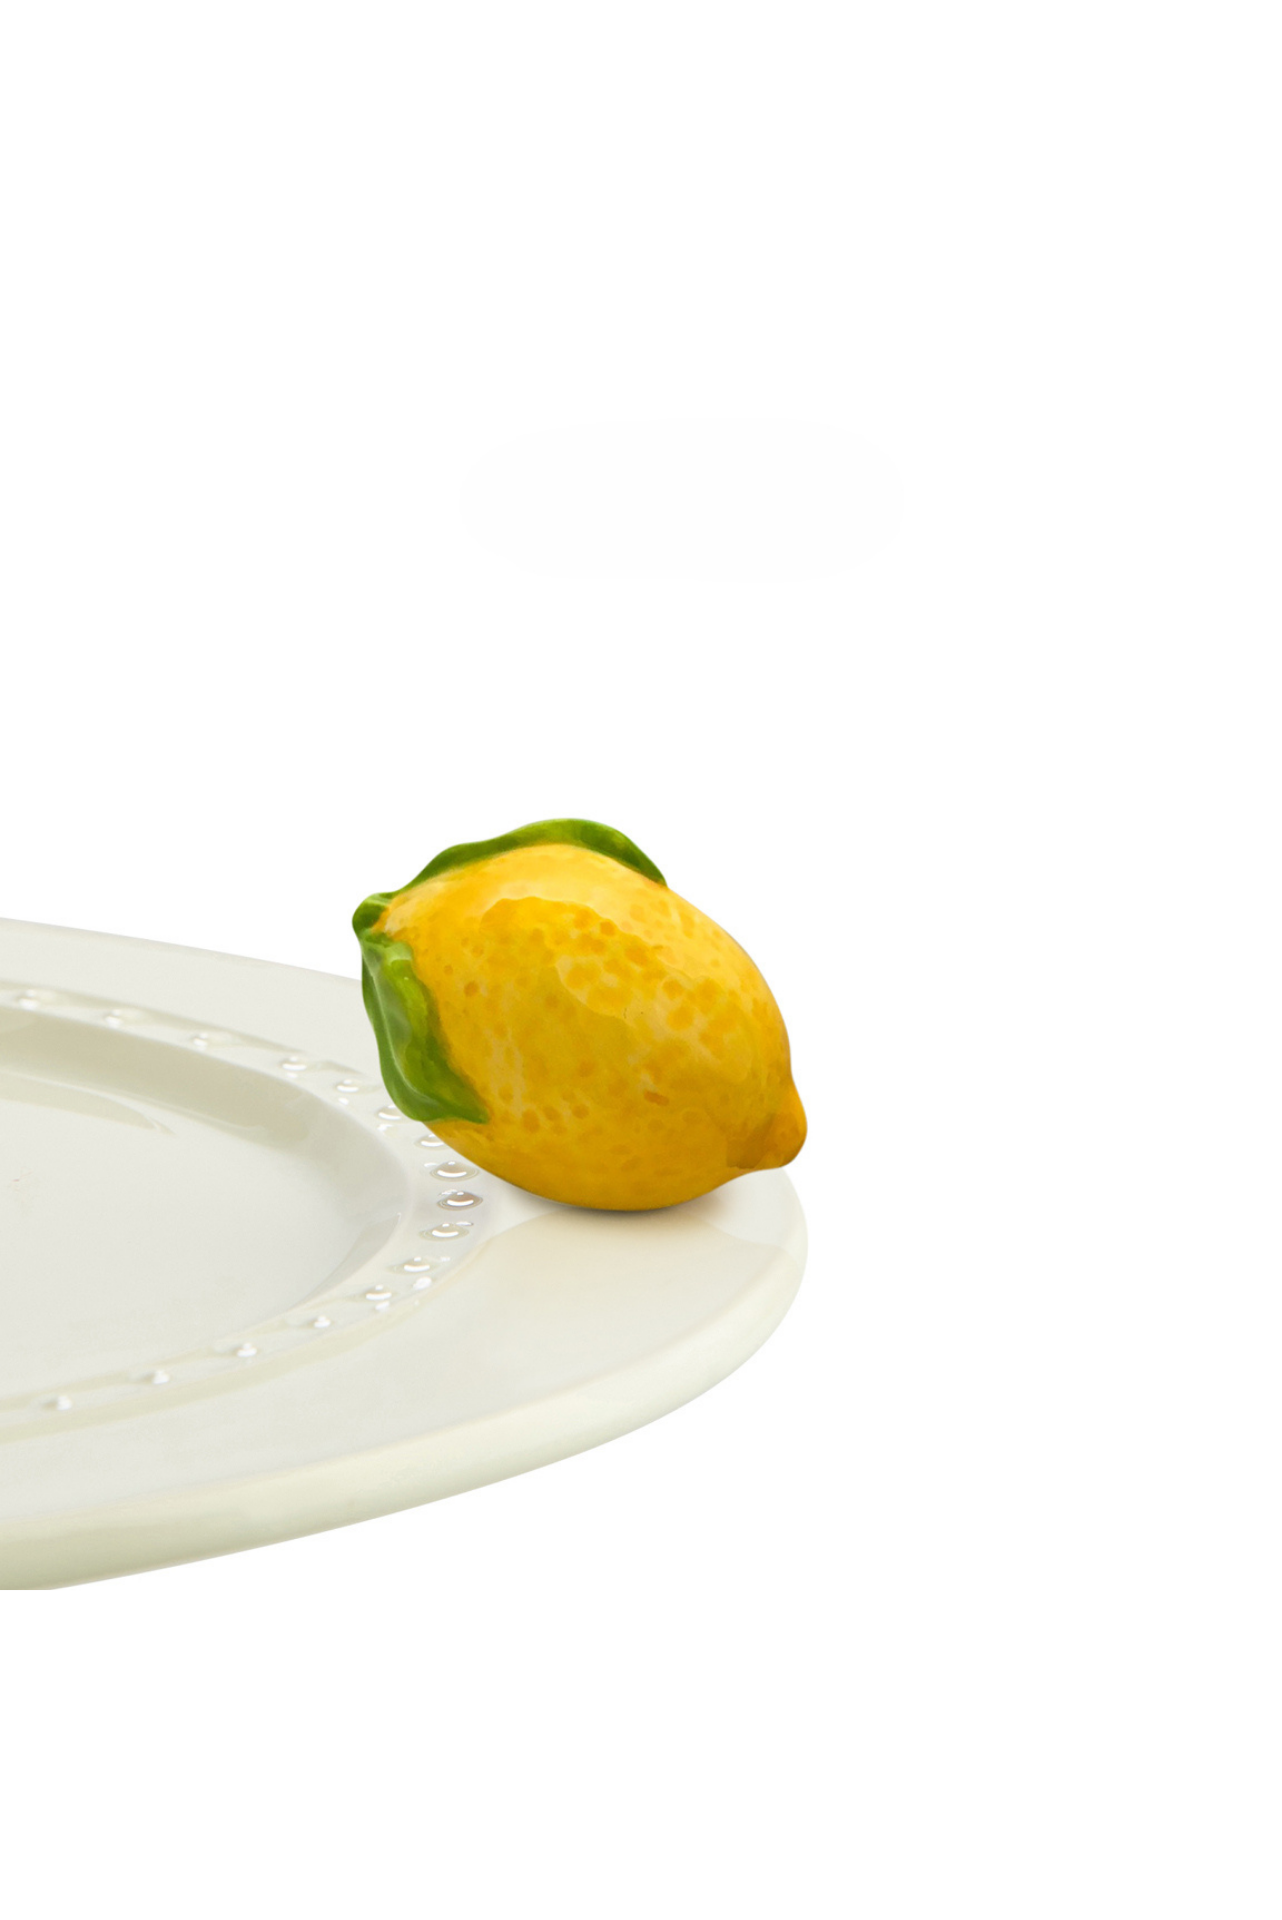 lemon squeeze (lemon)